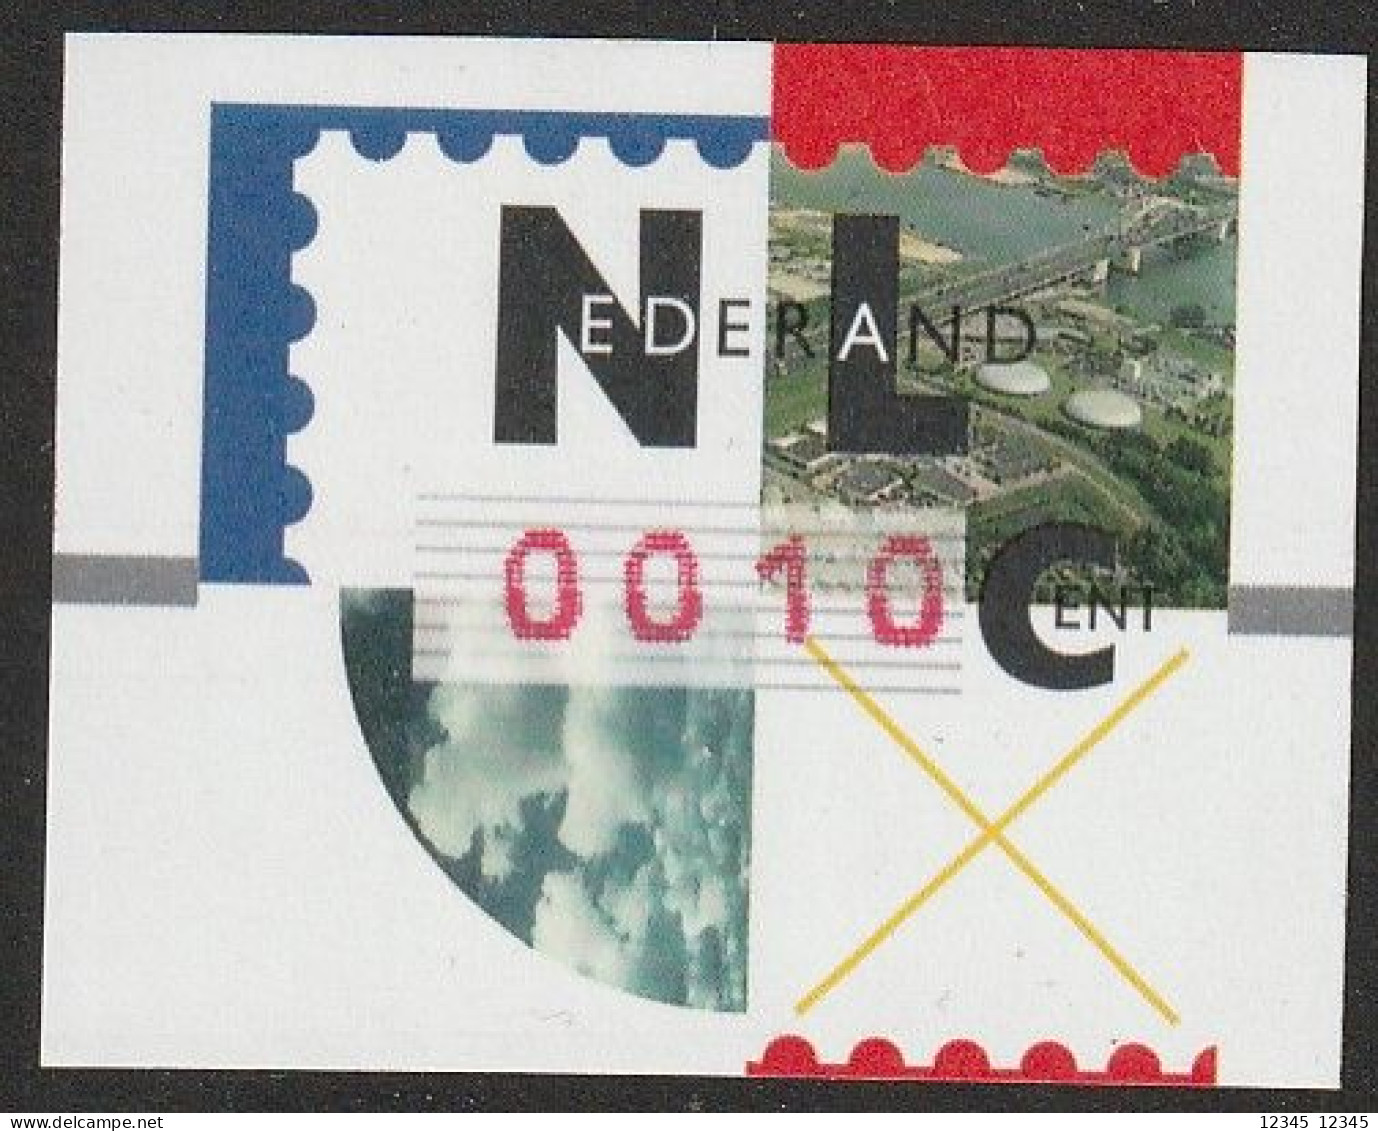 Nederland 1997, Postfris MNH, Nagler - Timbres De Distributeurs [ATM]